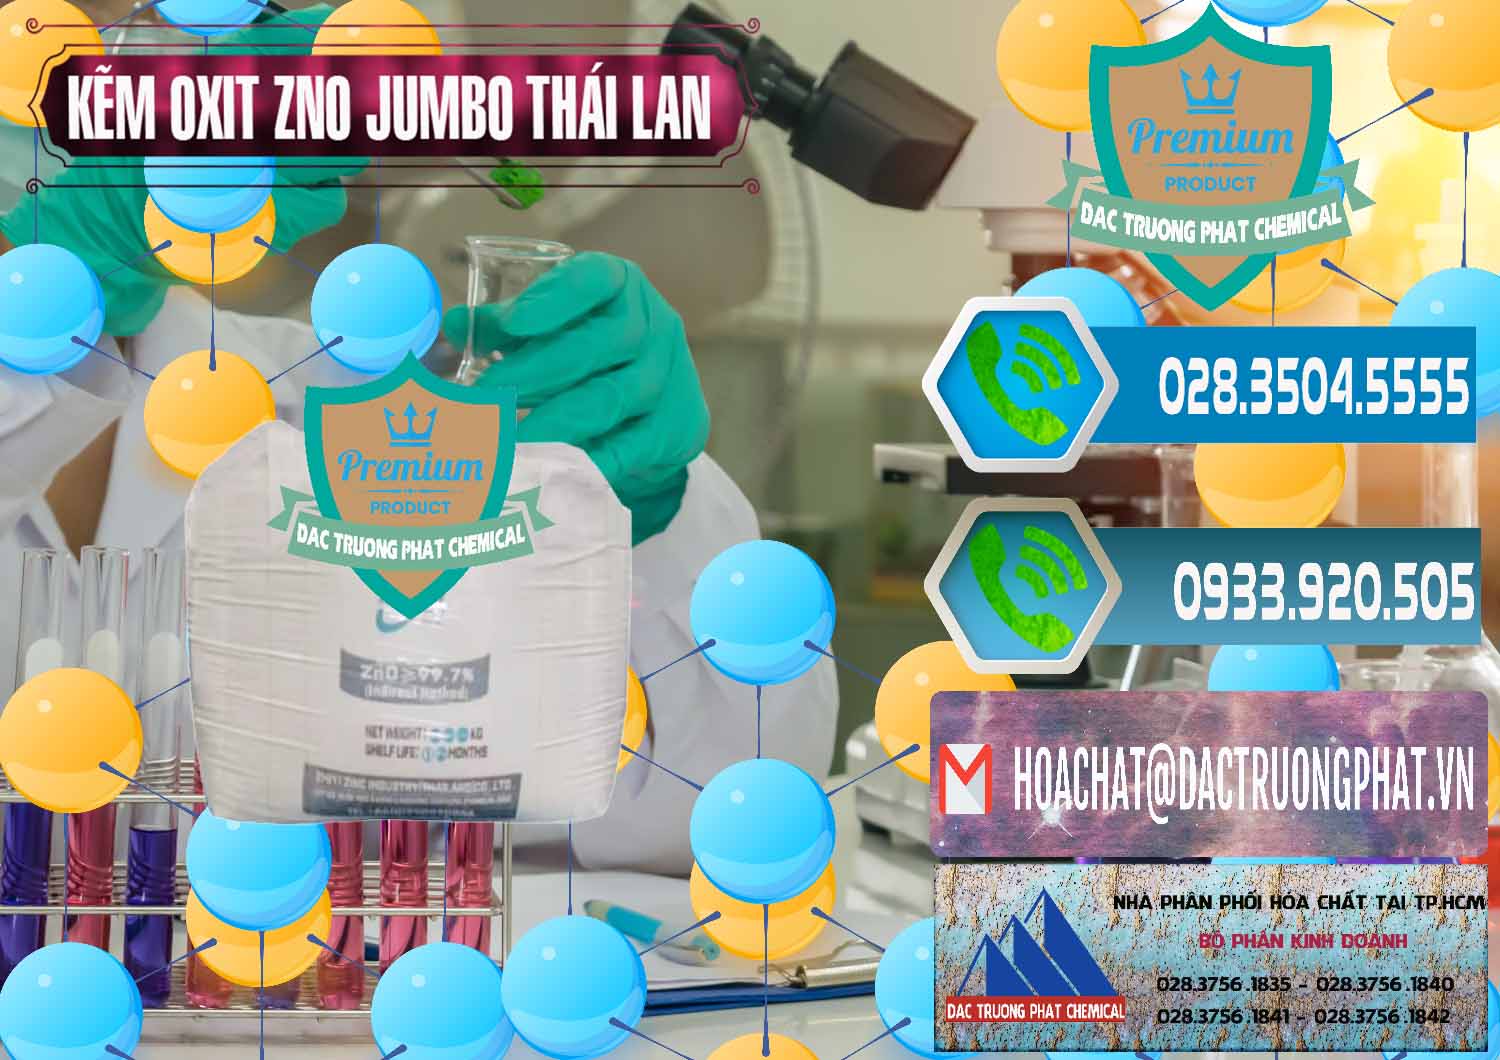 Đơn vị bán và phân phối Zinc Oxide - Bột Kẽm Oxit ZNO Jumbo Bành Thái Lan Thailand - 0370 - Đơn vị phân phối và bán hóa chất tại TP.HCM - congtyhoachat.net